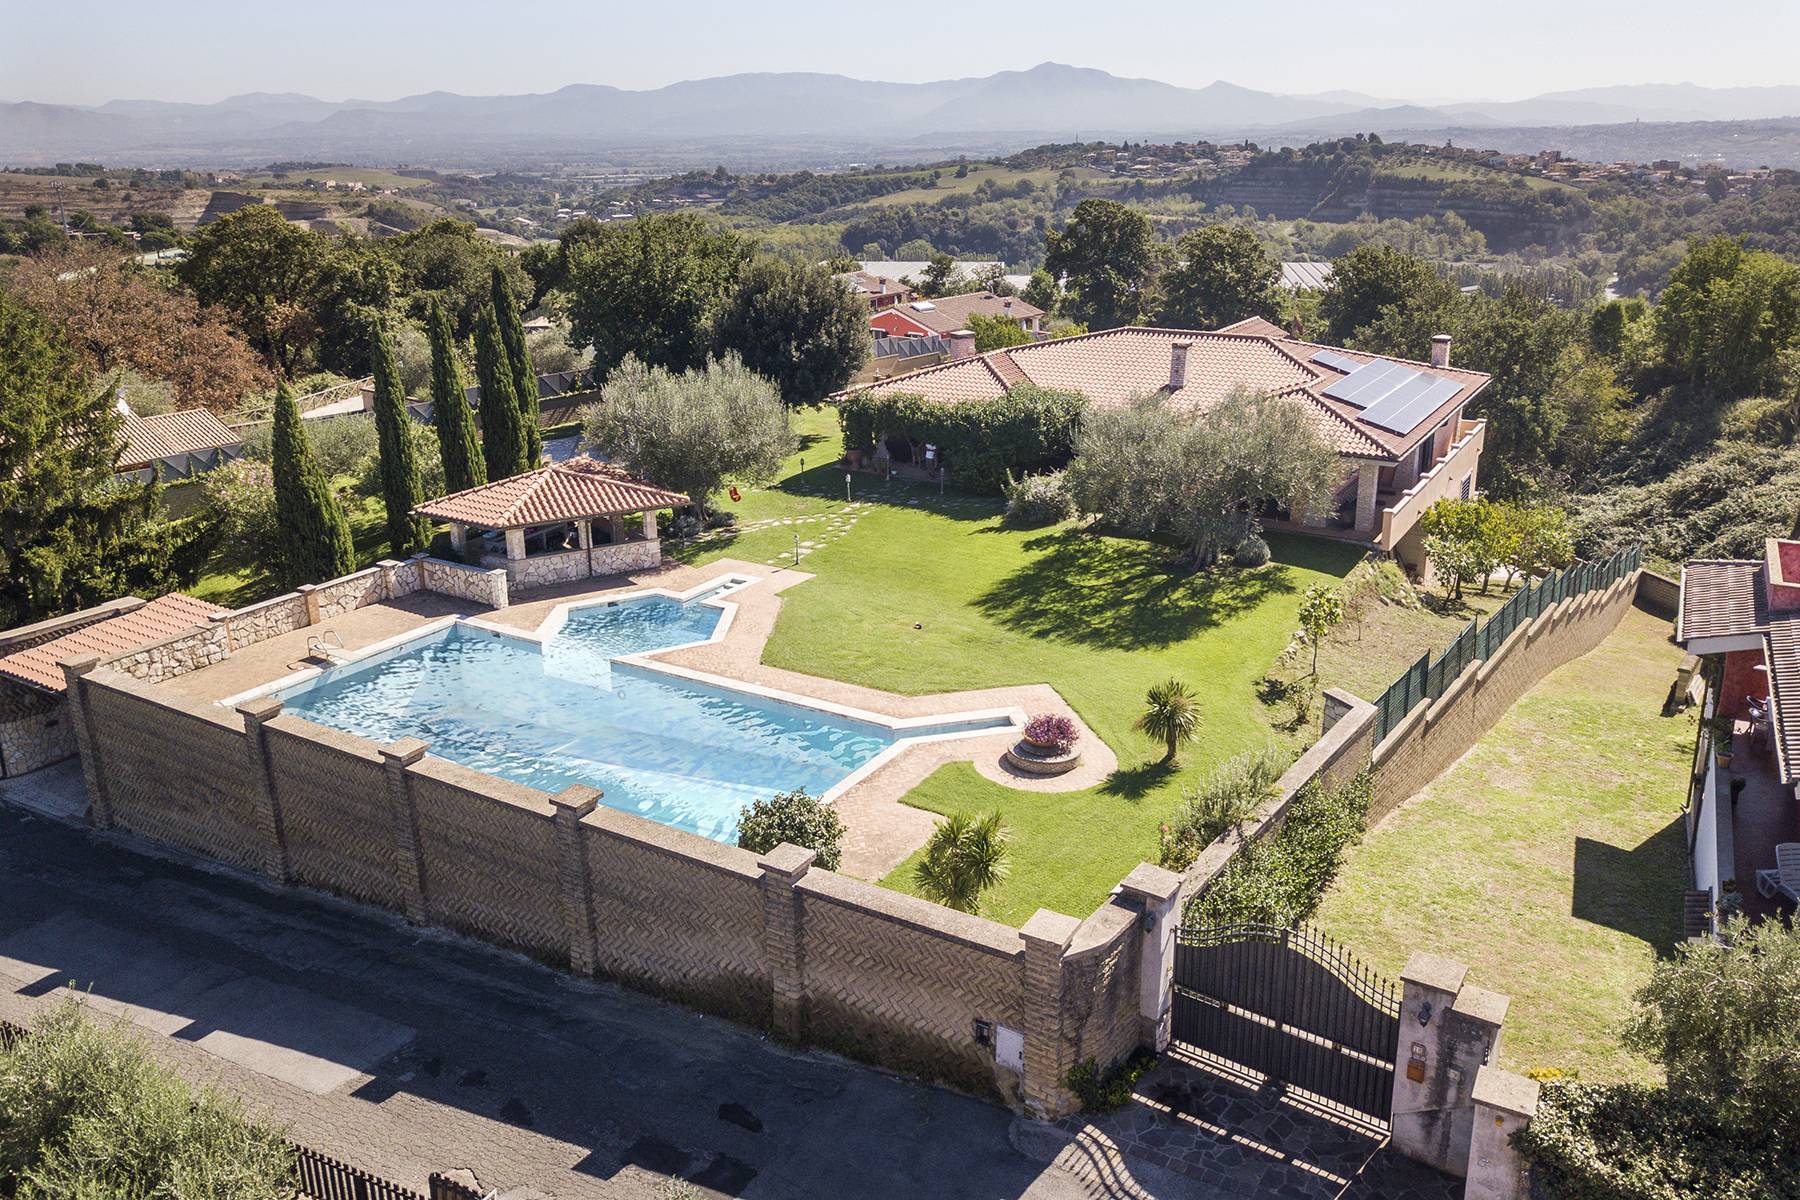 Villa in Vendita a Riano: 5 locali, 500 mq - Foto 1